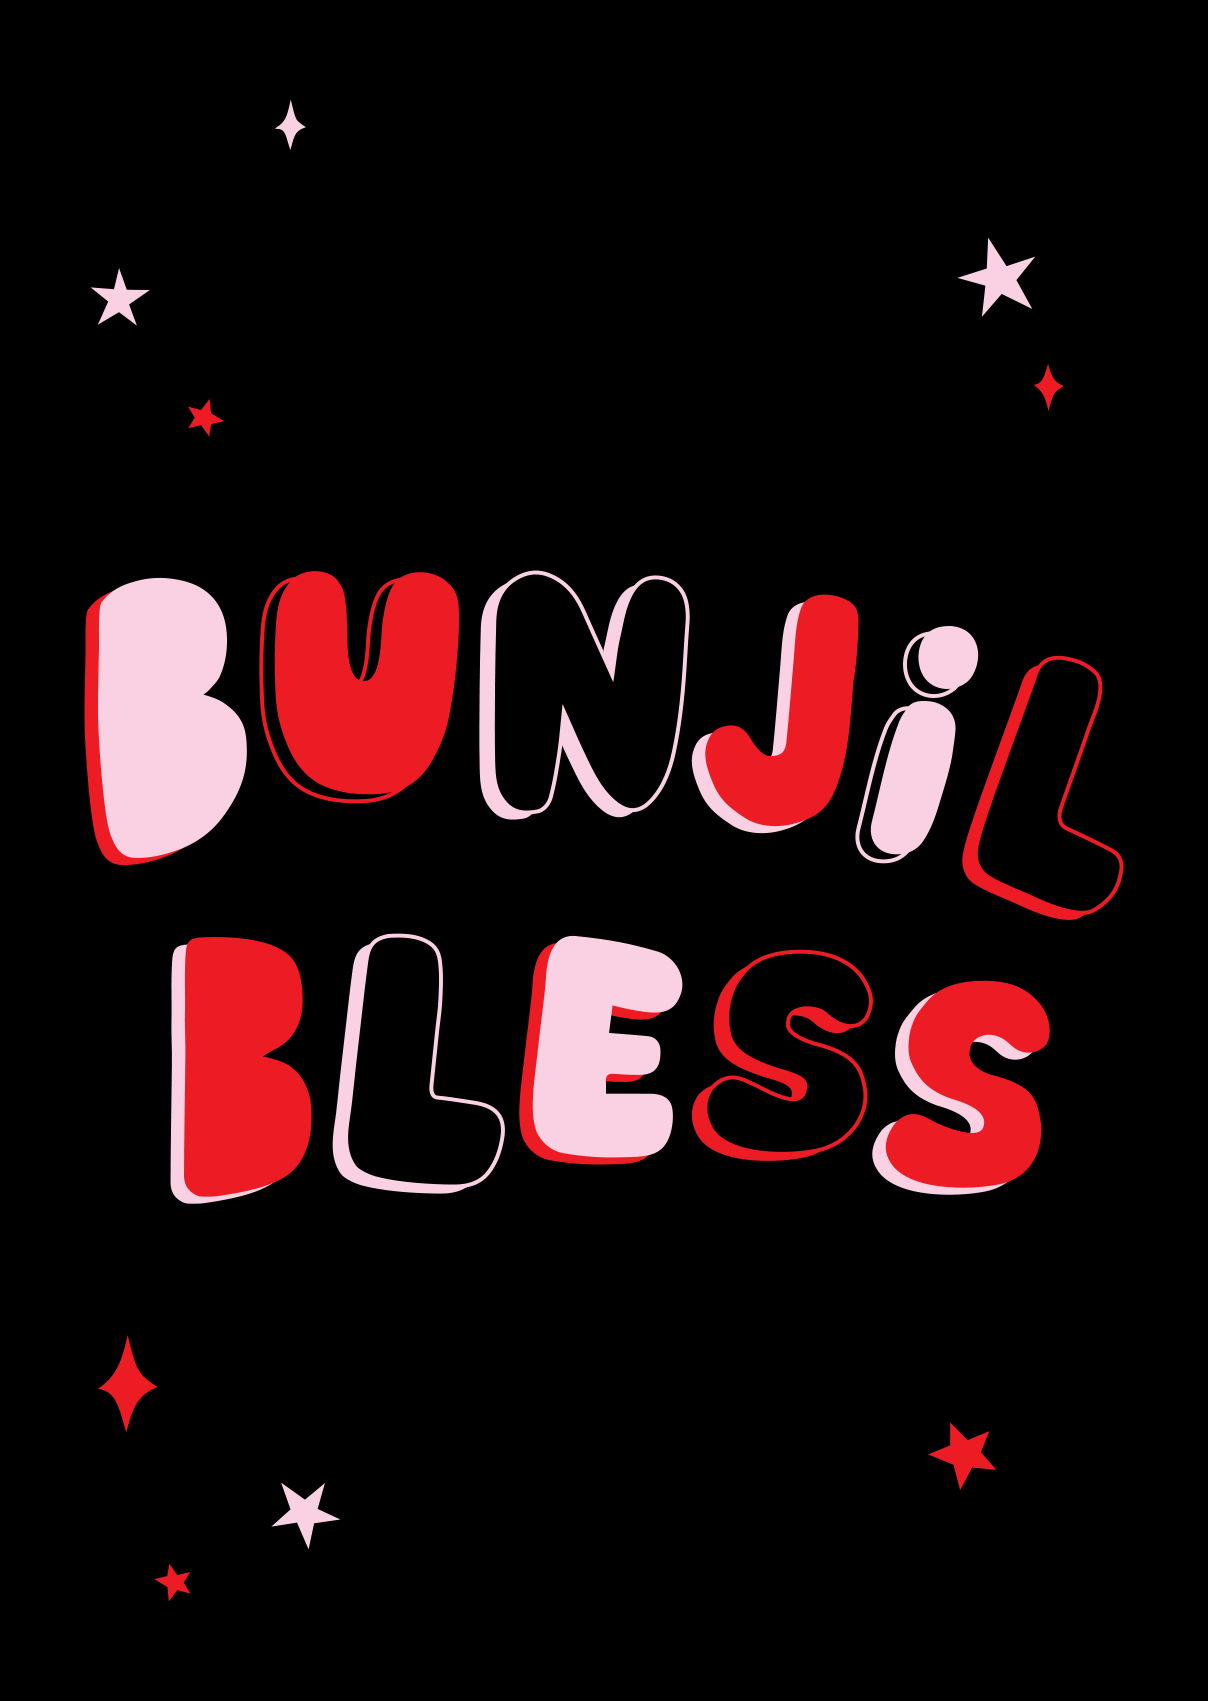 Bunjil bless poster